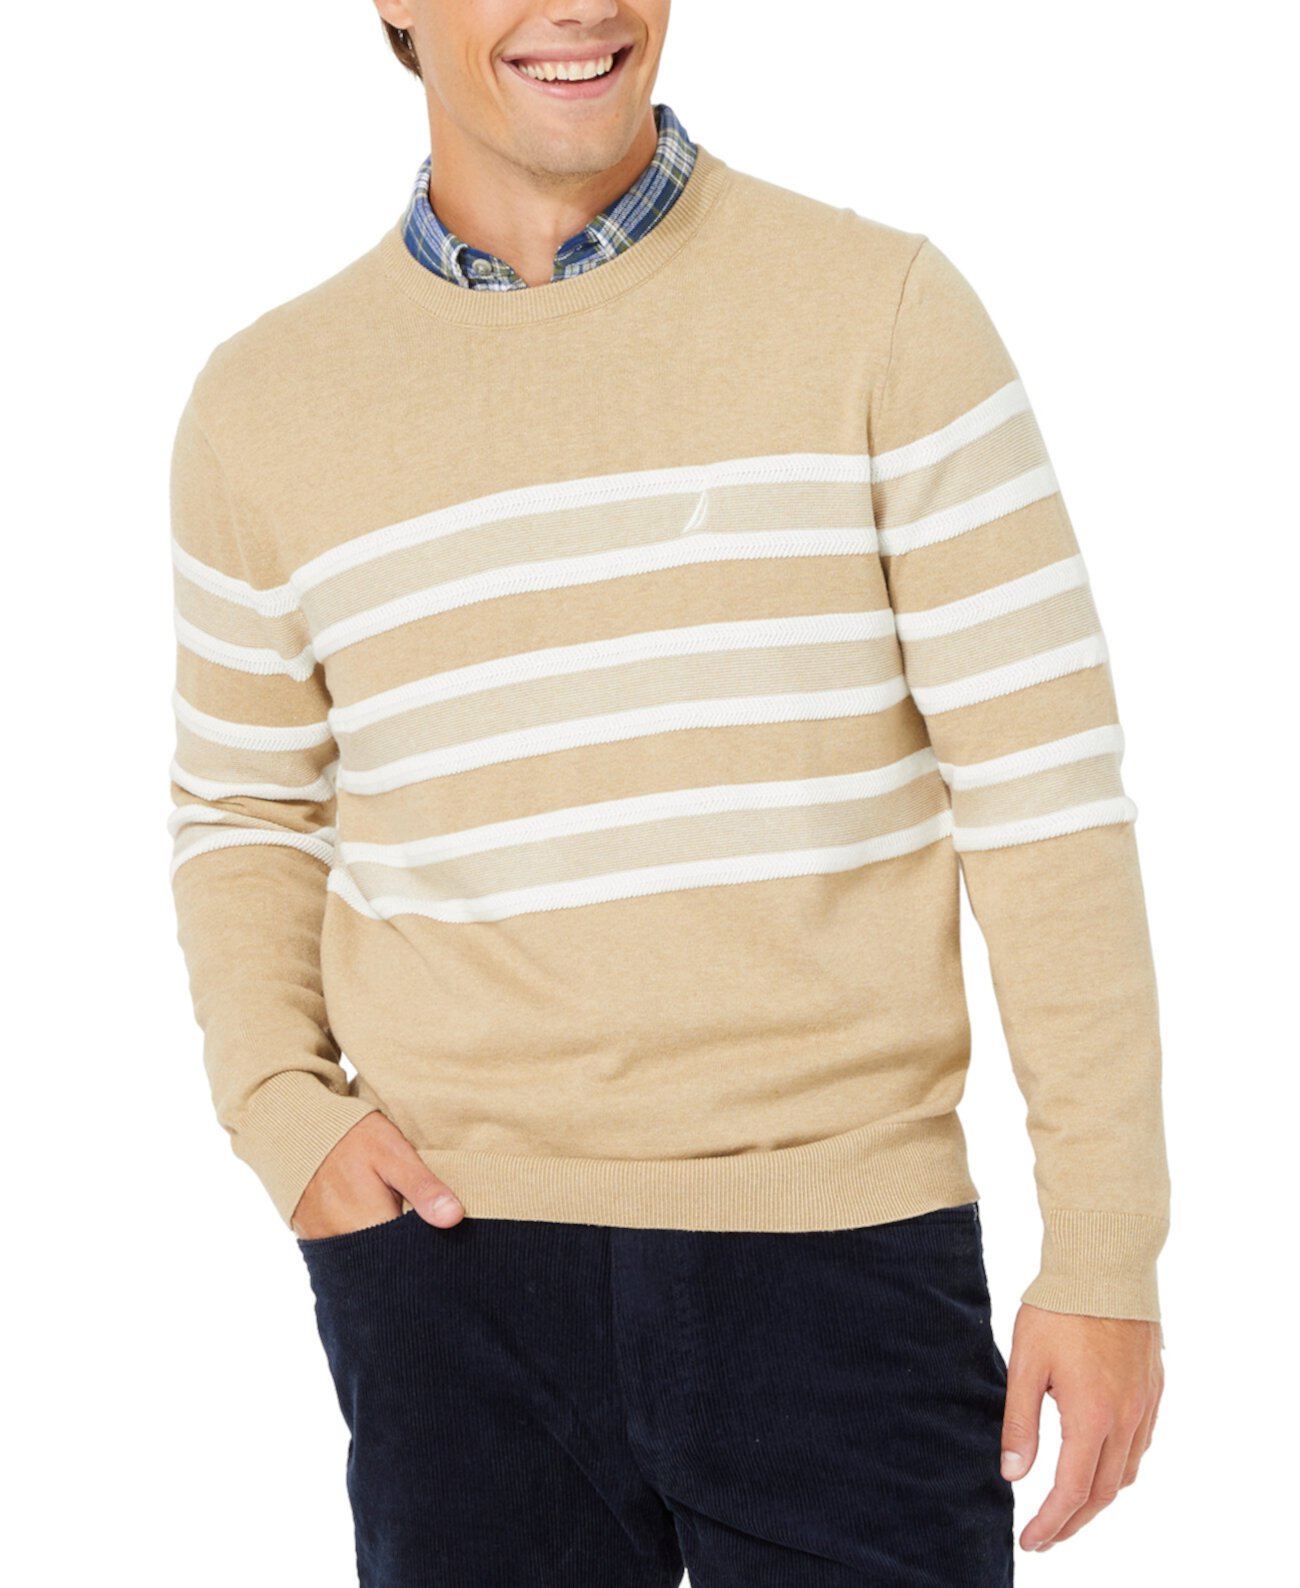 Мужской свитер с круглым вырезом в фактурную полоску Nautica